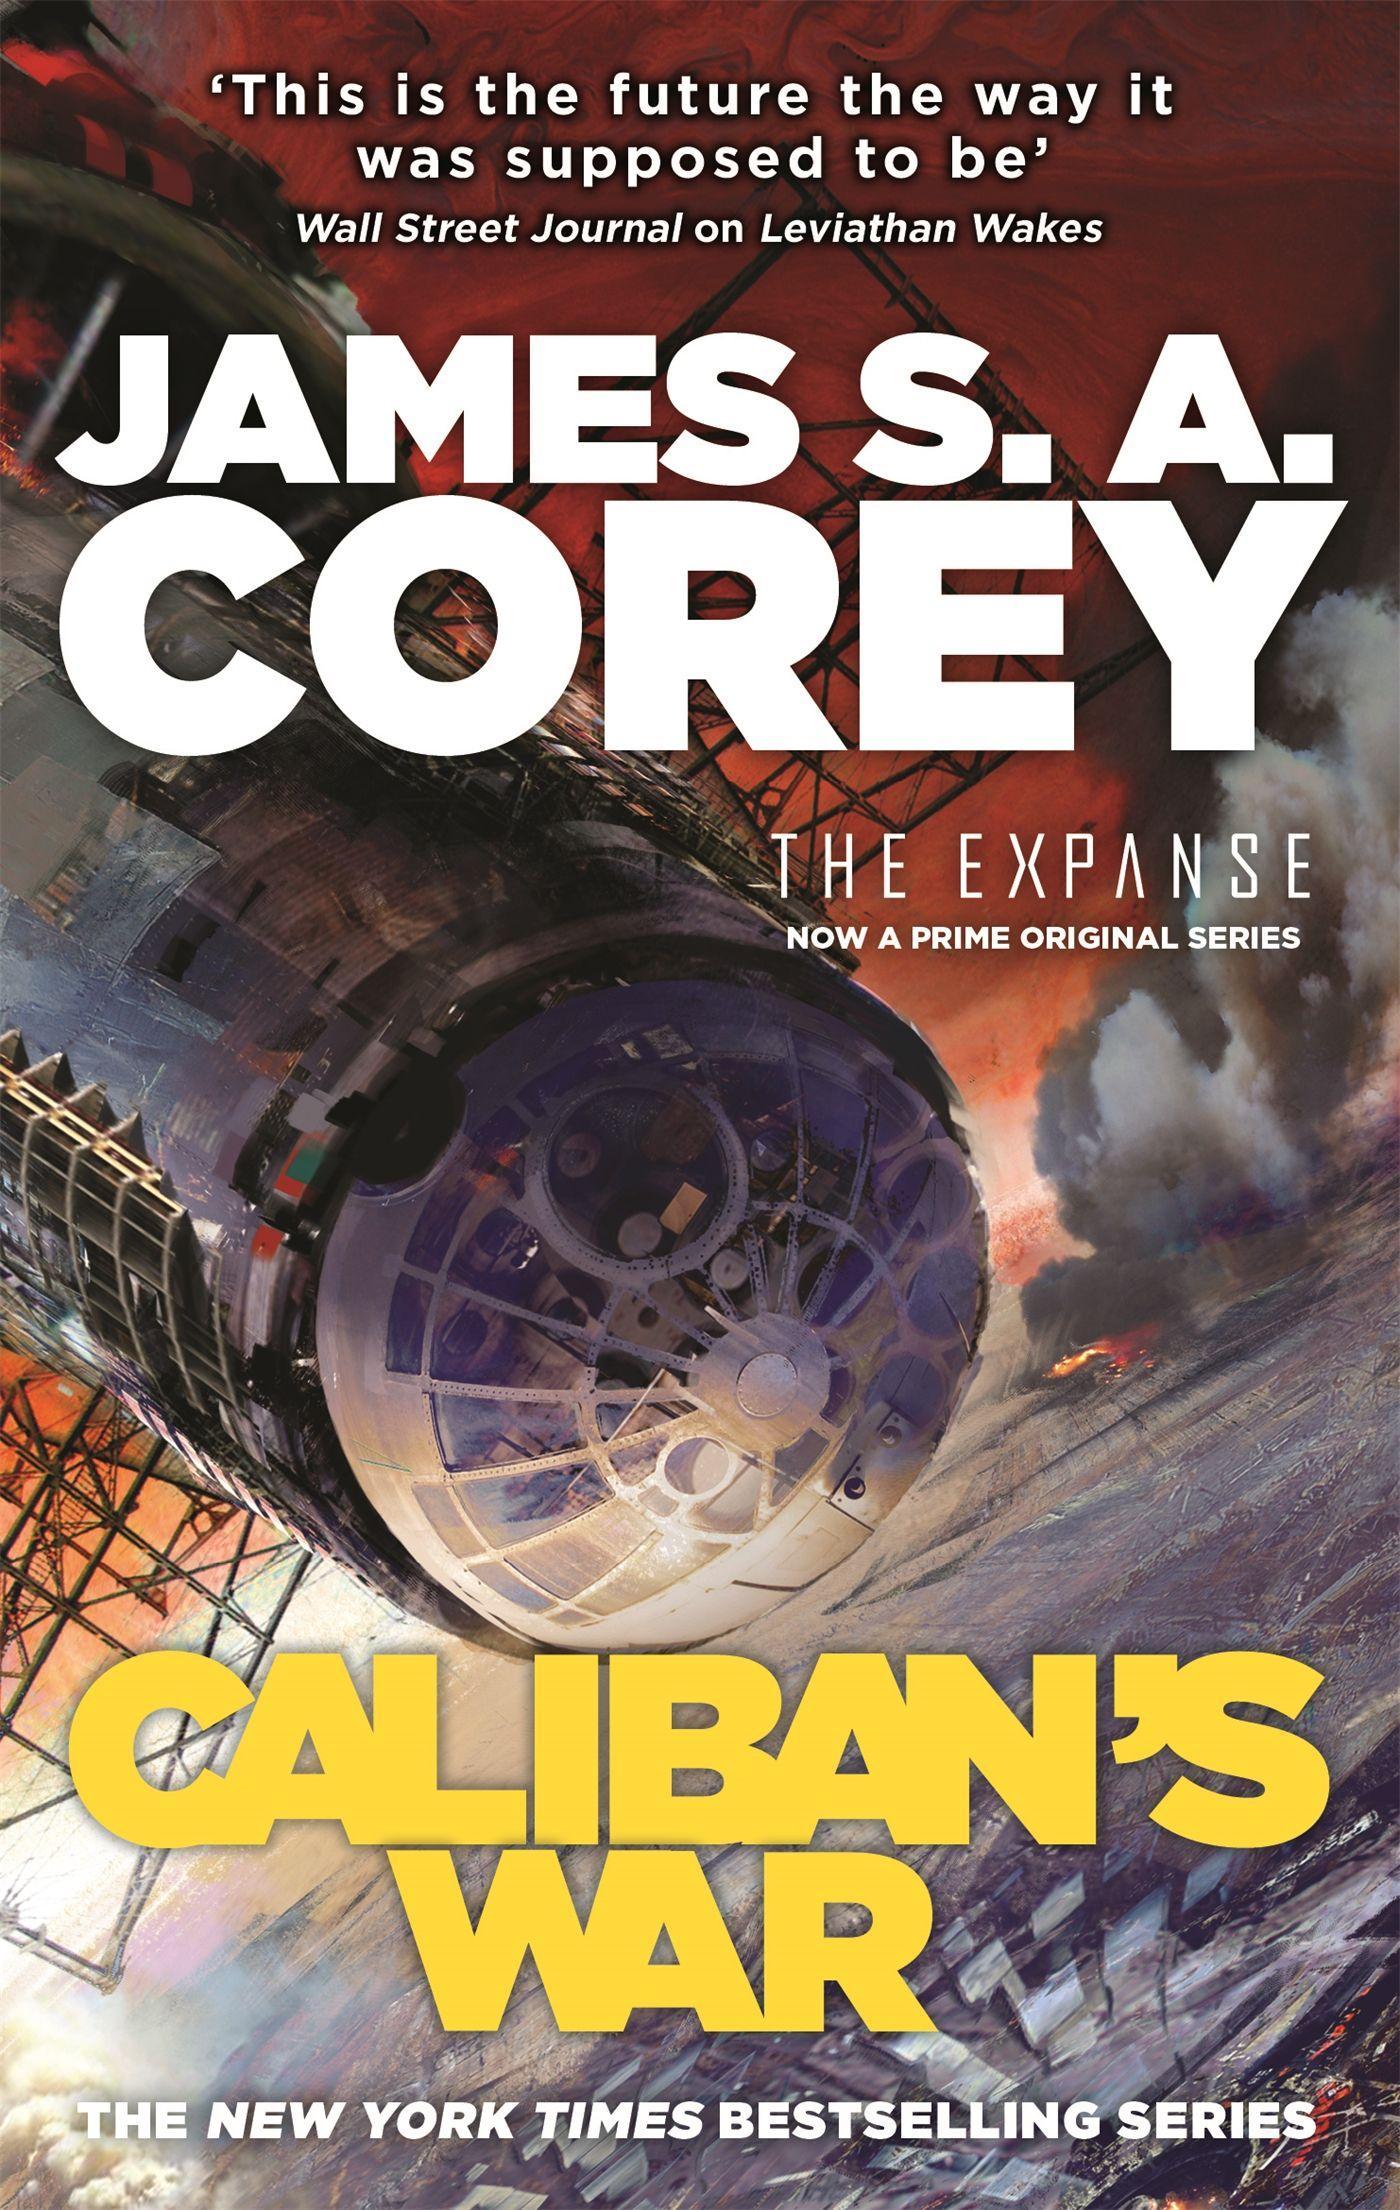 The Expanse 02. Caliban's War